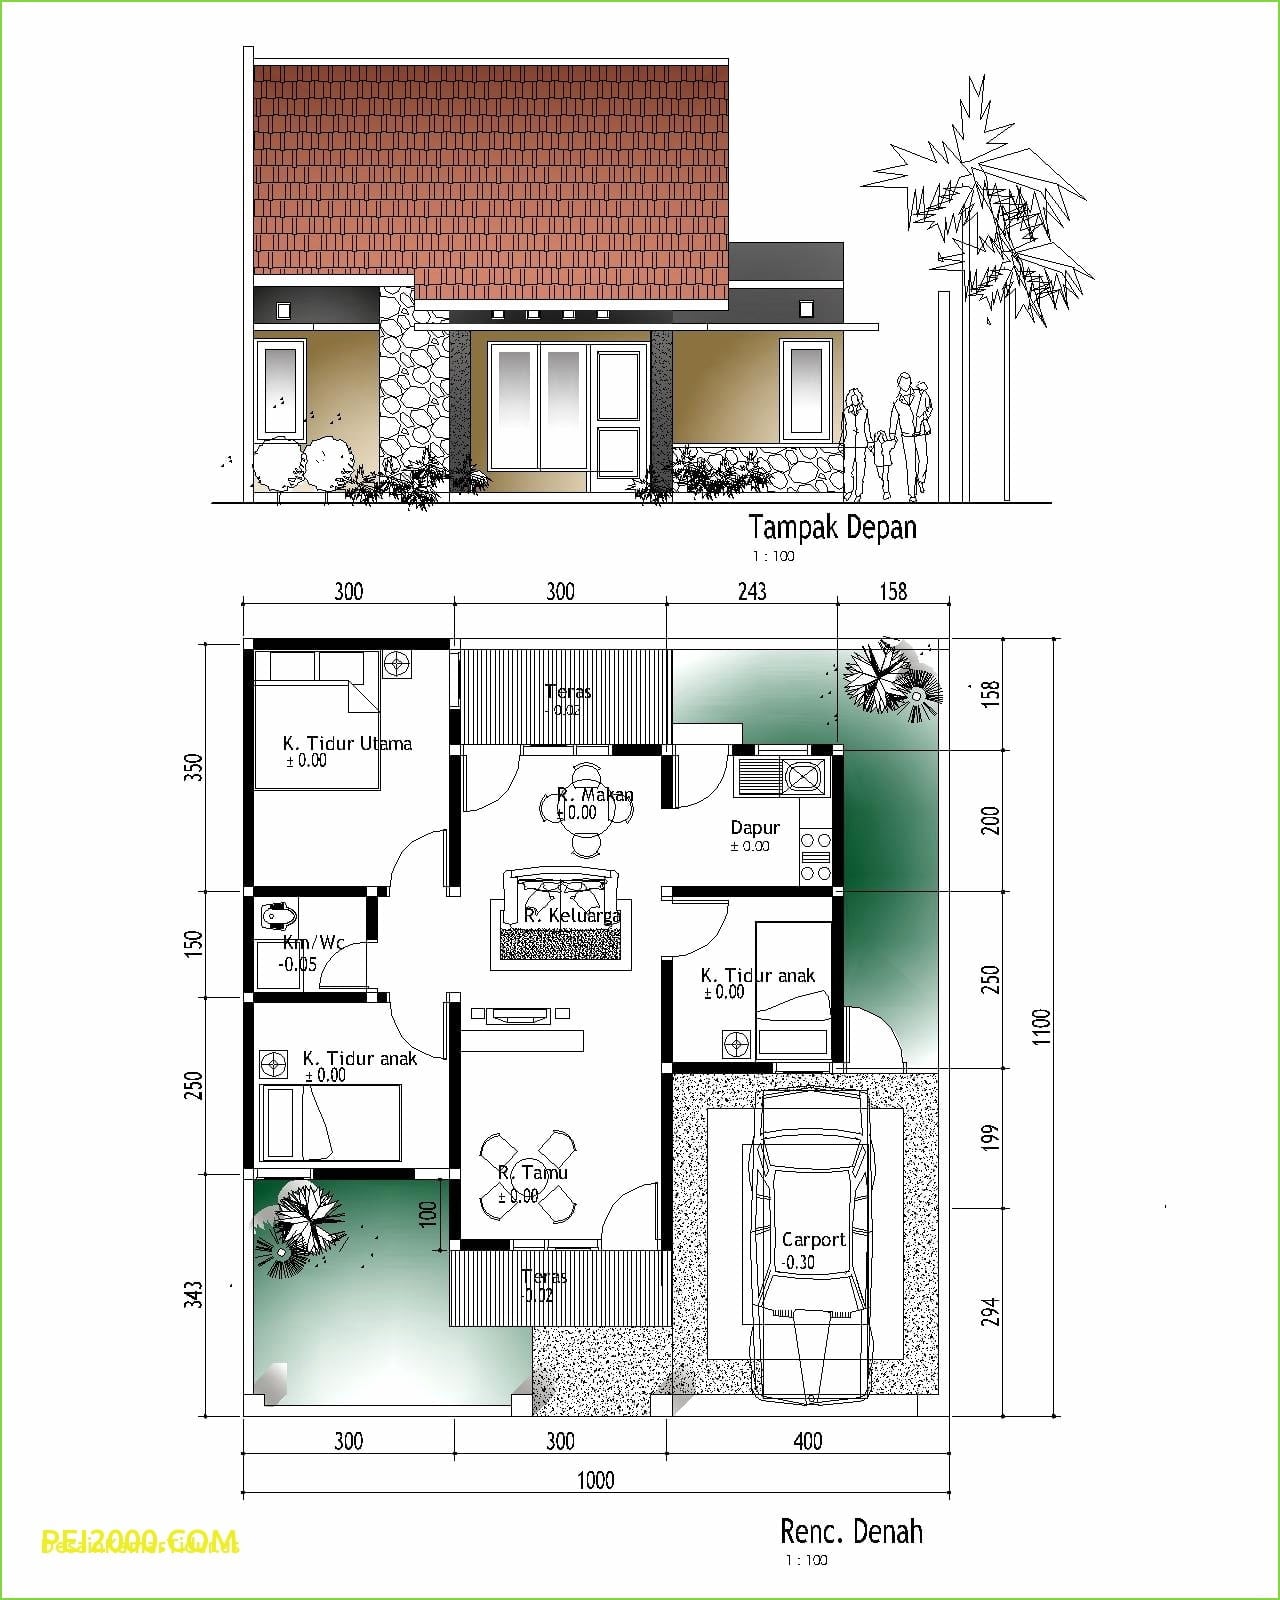 Menyenangkan Desain Rumah Sederhana Ukuran 7x12 87 Di Inspirasi Interior Rumah dengan Desain Rumah Sederhana Ukuran 7x12